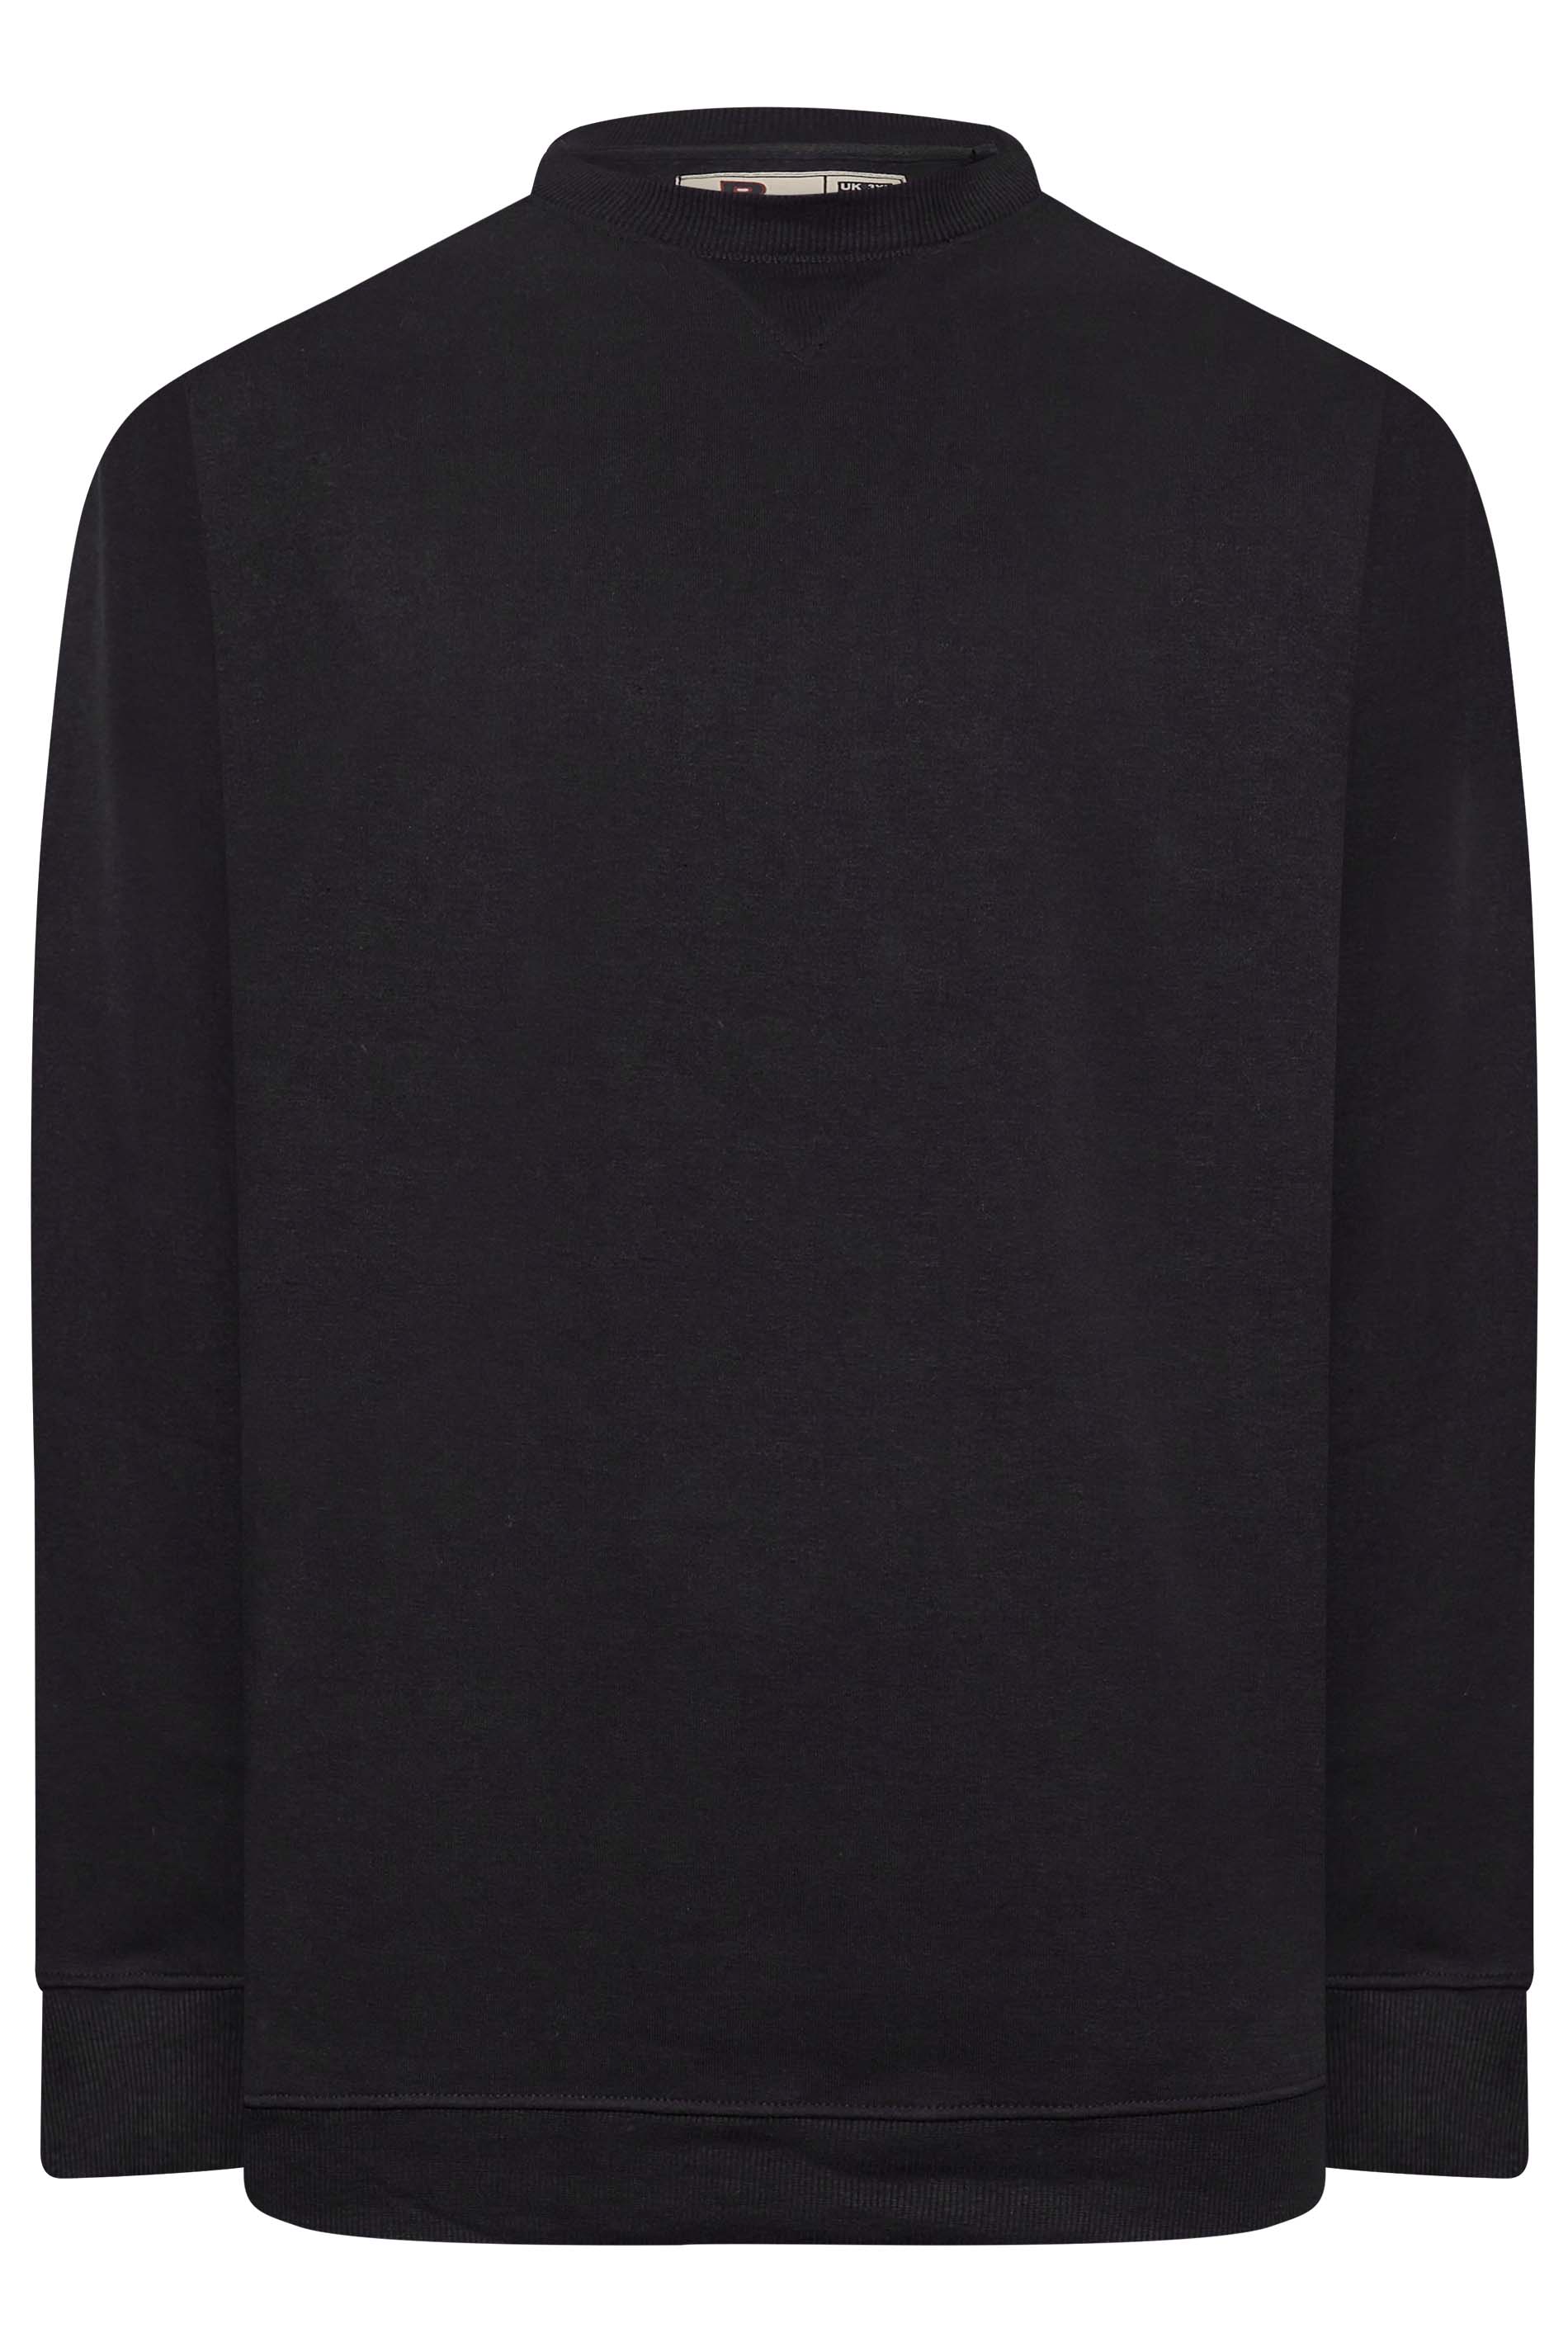 D555 Big & Tall Black Rockford Sweatshirt | BadRhino 3